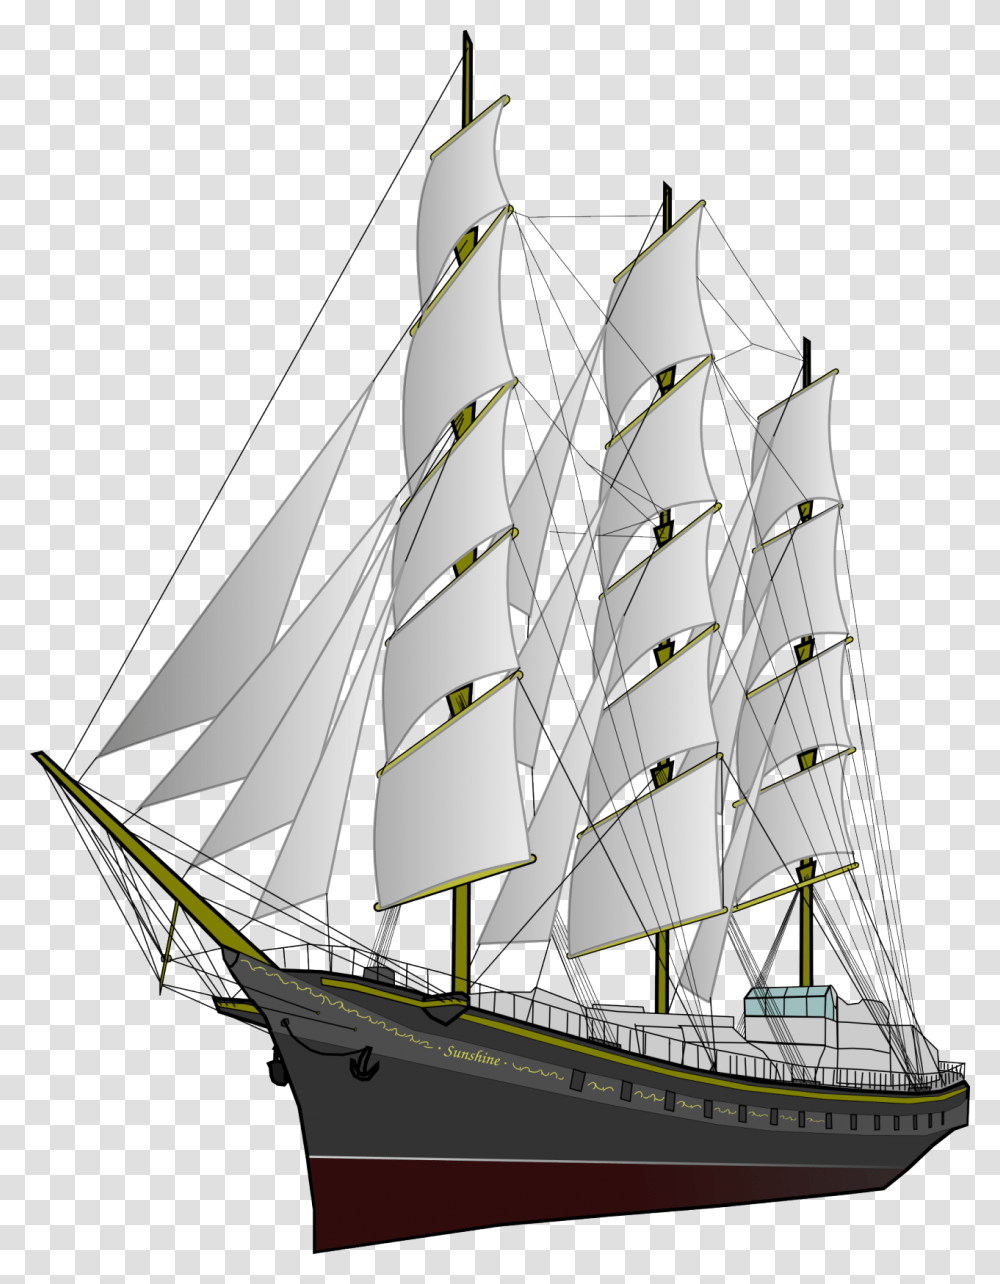 Sailing Ship Sailing Ship, Boat, Vehicle, Transportation, Sailboat Transparent Png